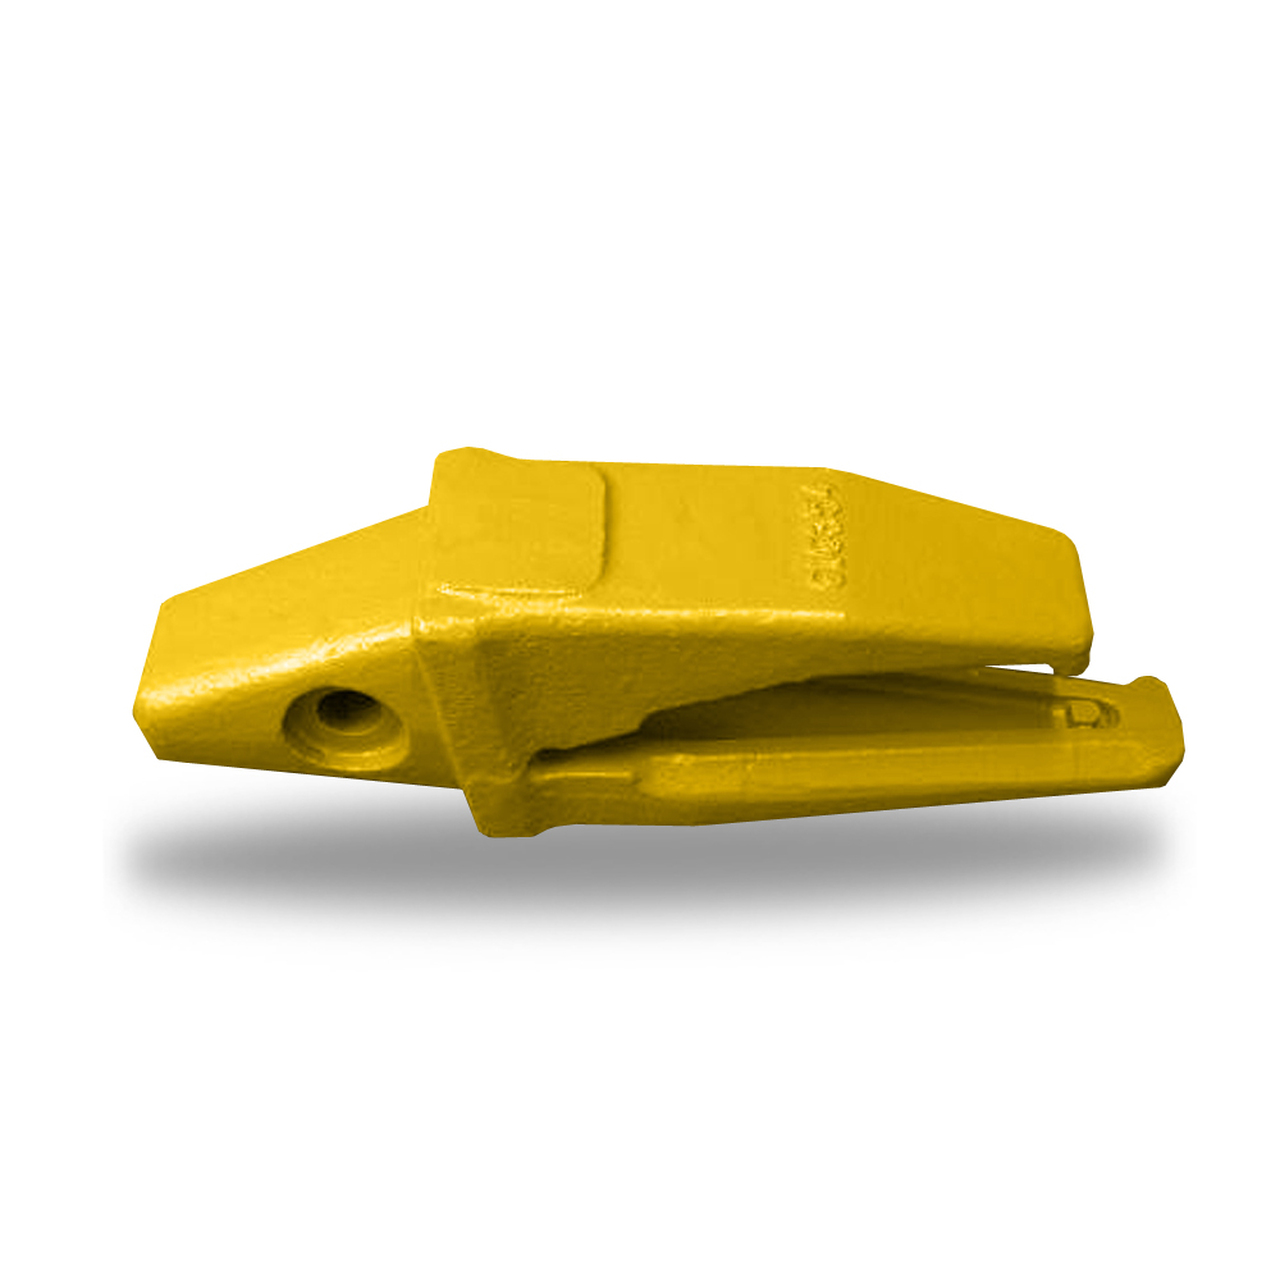 3G8356 / 6I6356 Excavadora Serie J350 Sistema de dientes Caterpillar Adaptador de diente de cucharón Caterpillar Dientes de cucharón soldados